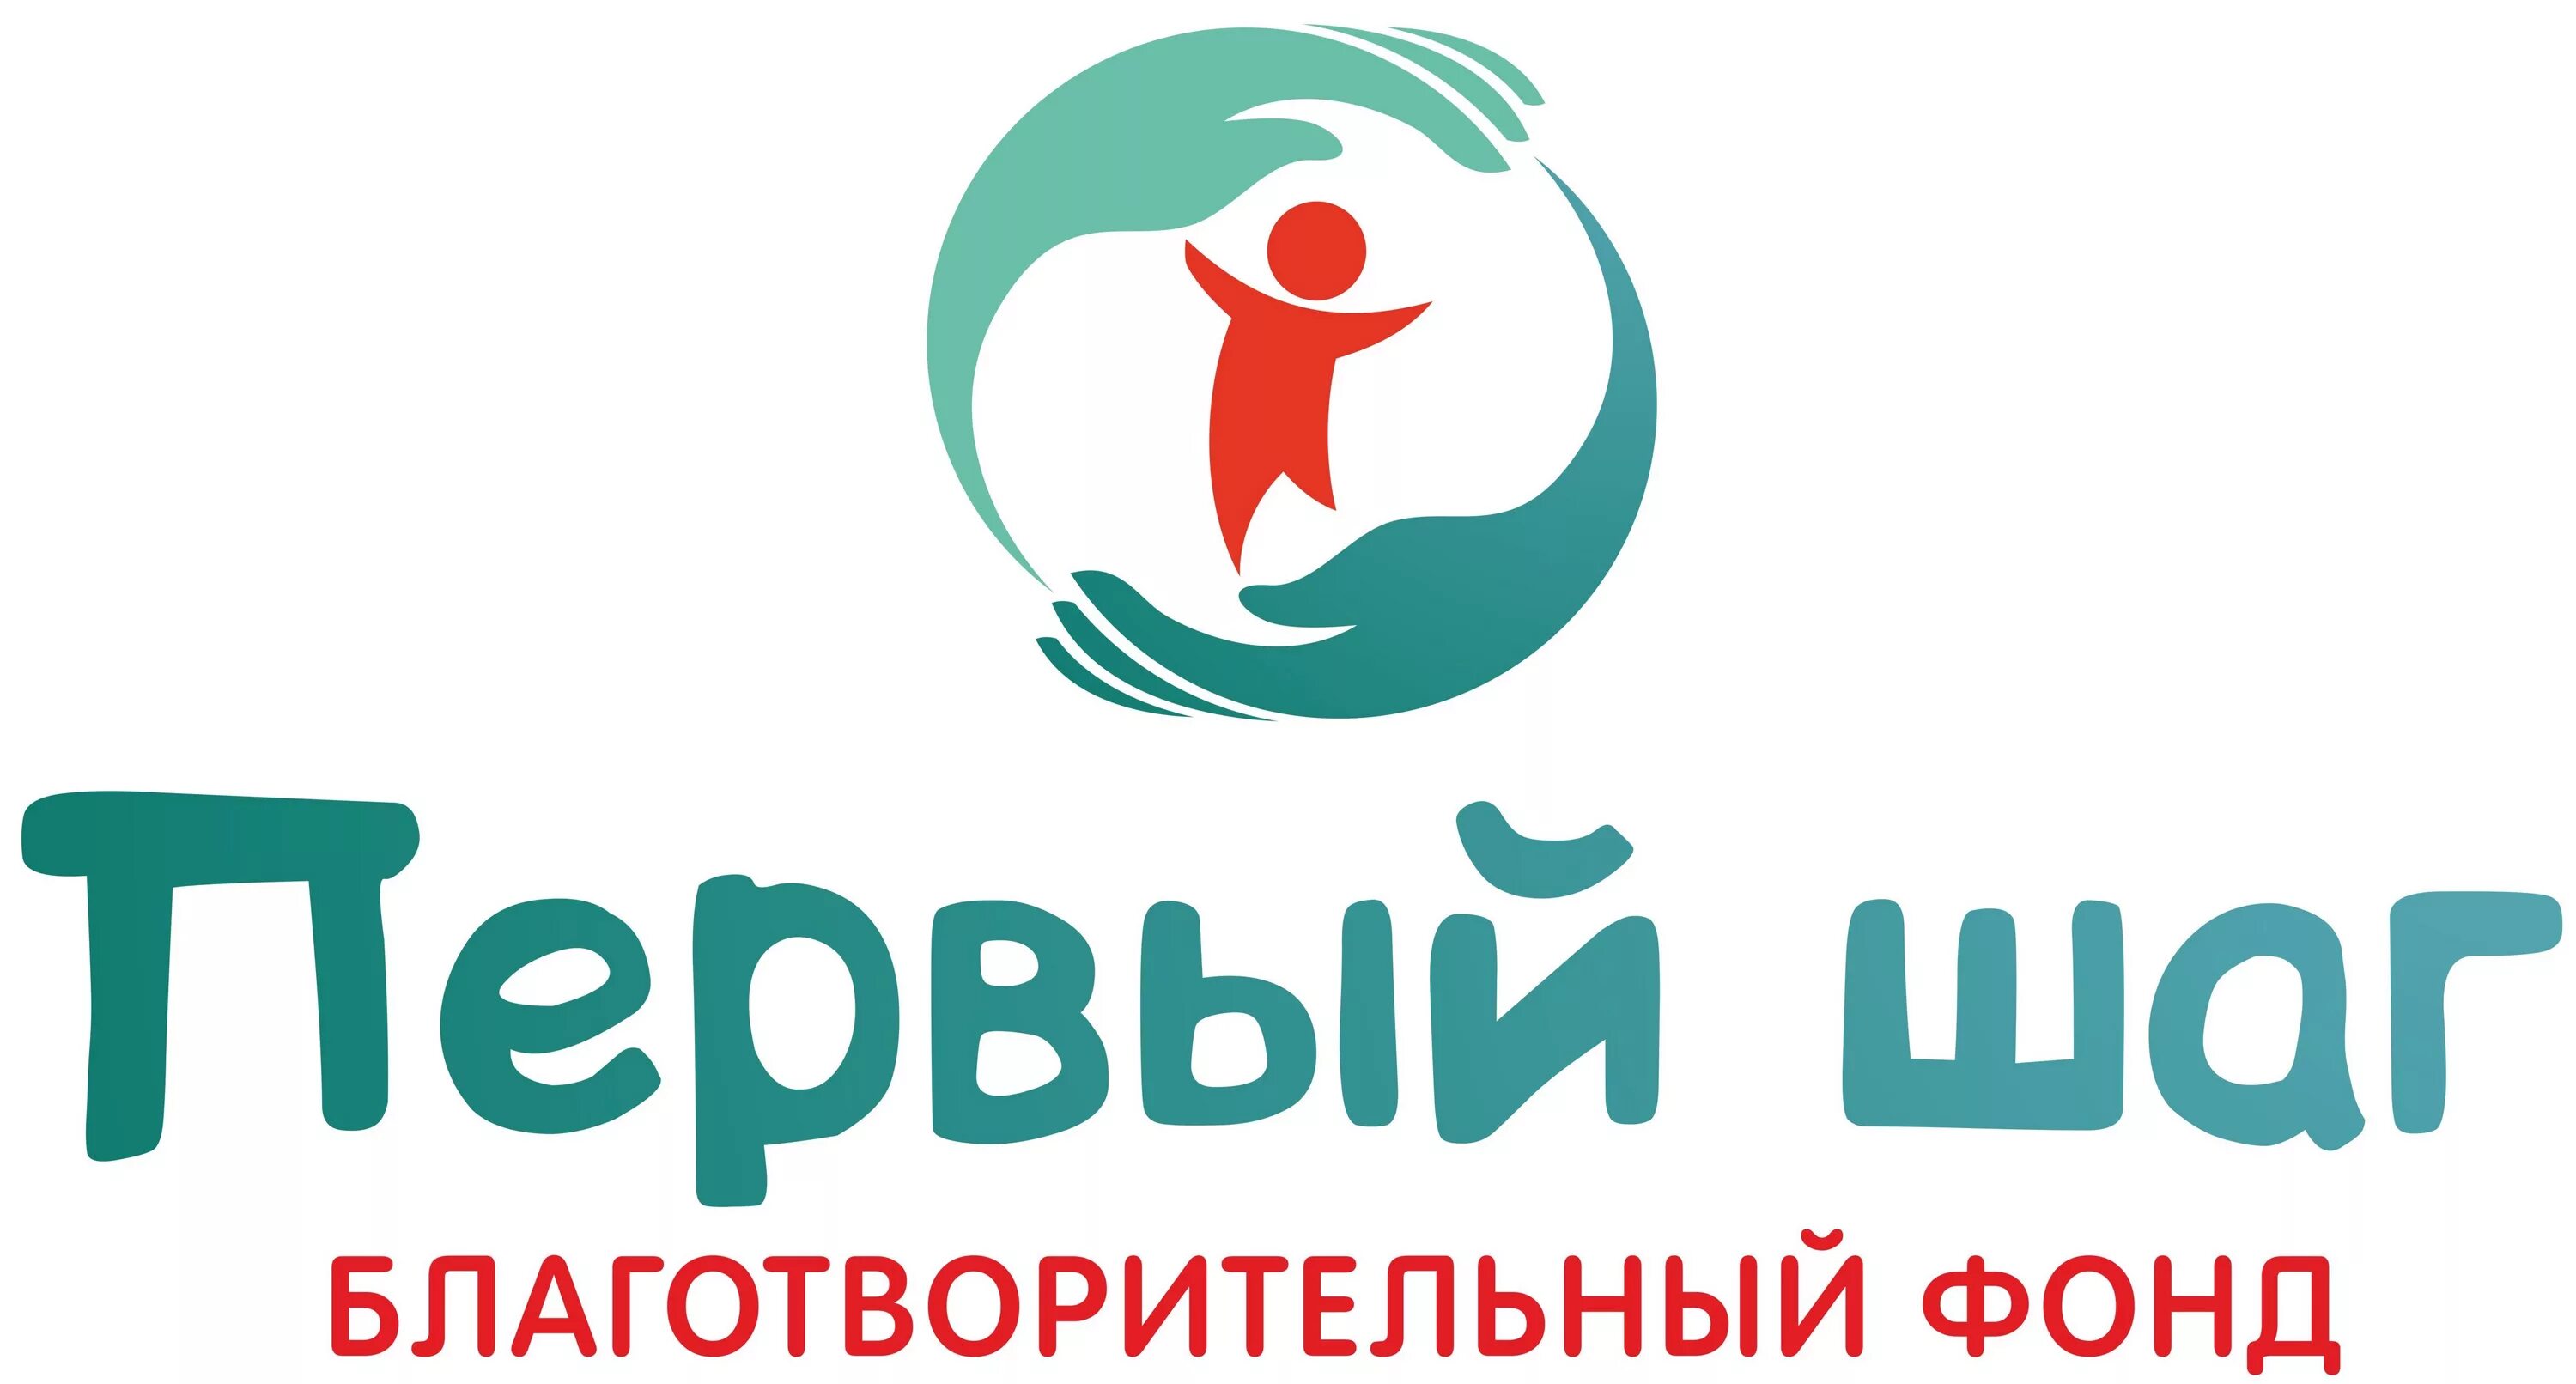 Благотворительный фонд. Эмблема благотворительности. Благотворительный фонд лого. Логотипы благотворительных фондов России.